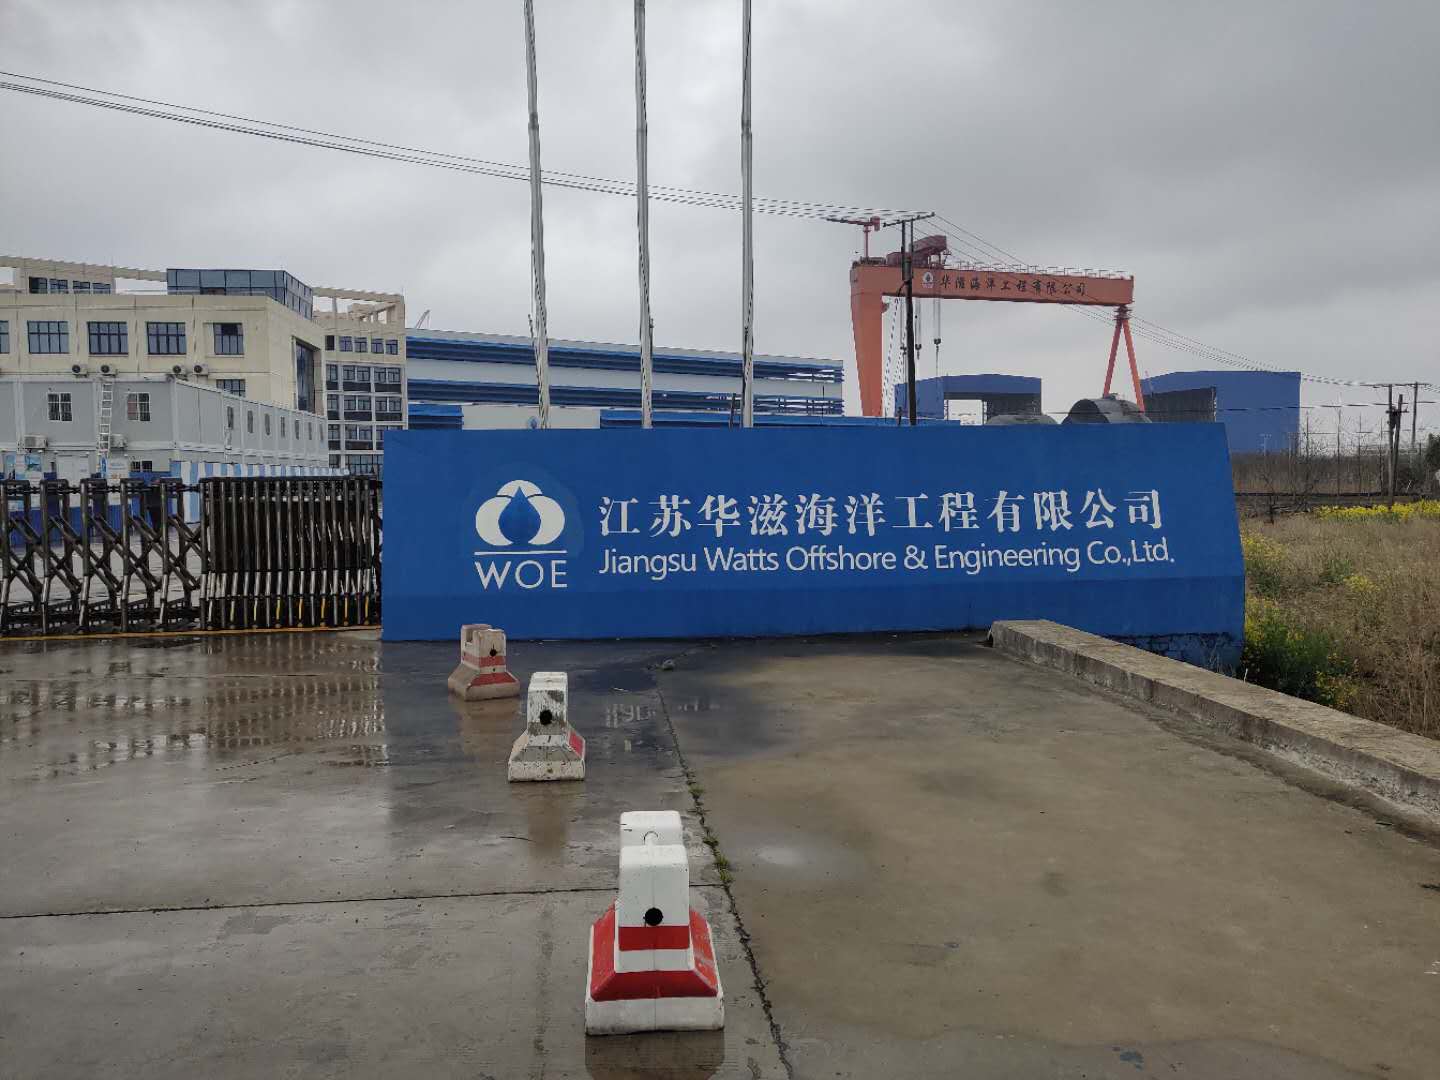 江蘇華滋海洋工程有限公司 